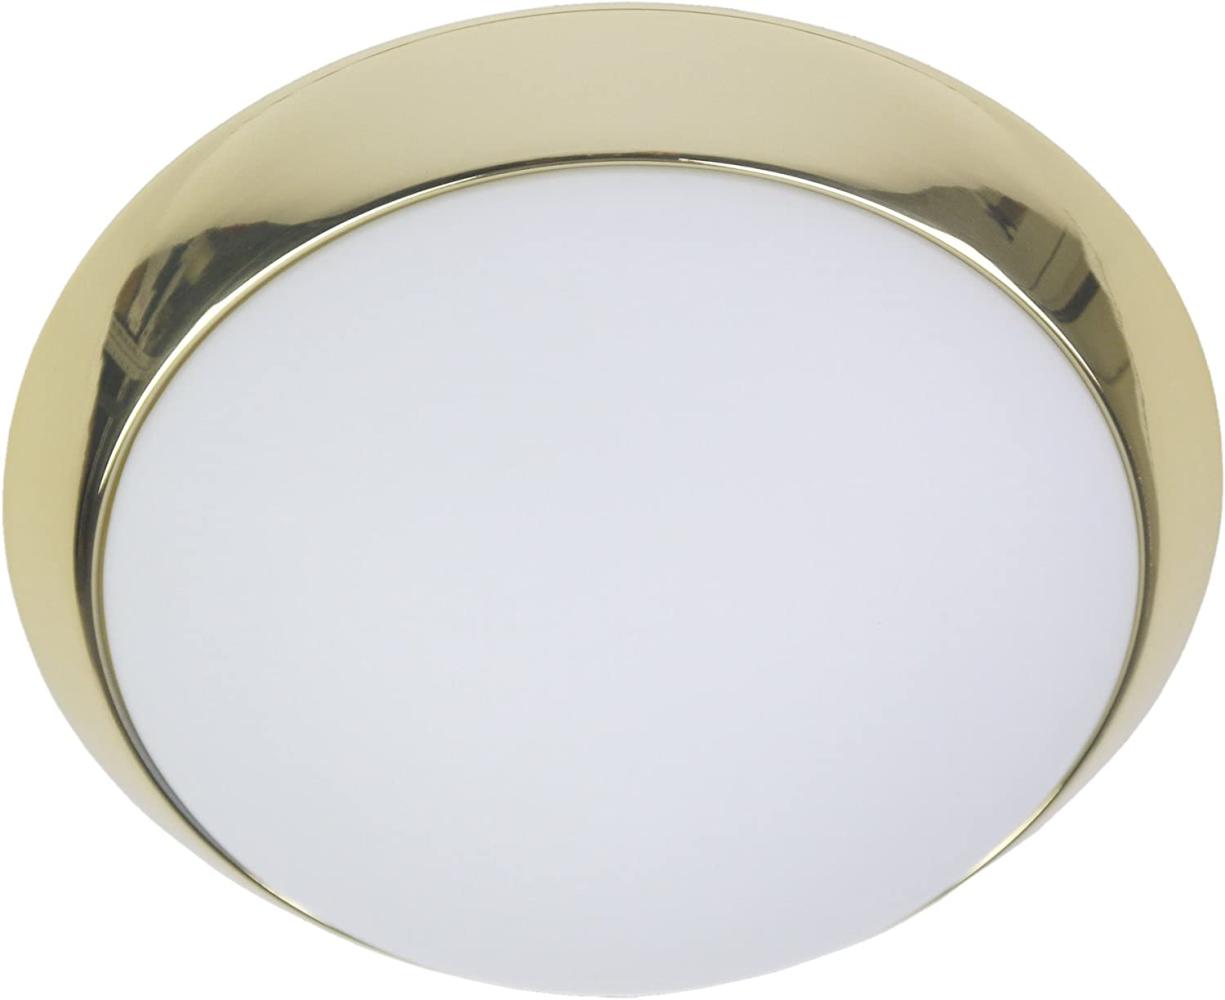 LED-Deckenleuchte rund, Opalglas matt, Dekorring Messing poliert, Ø 50cm Bild 1